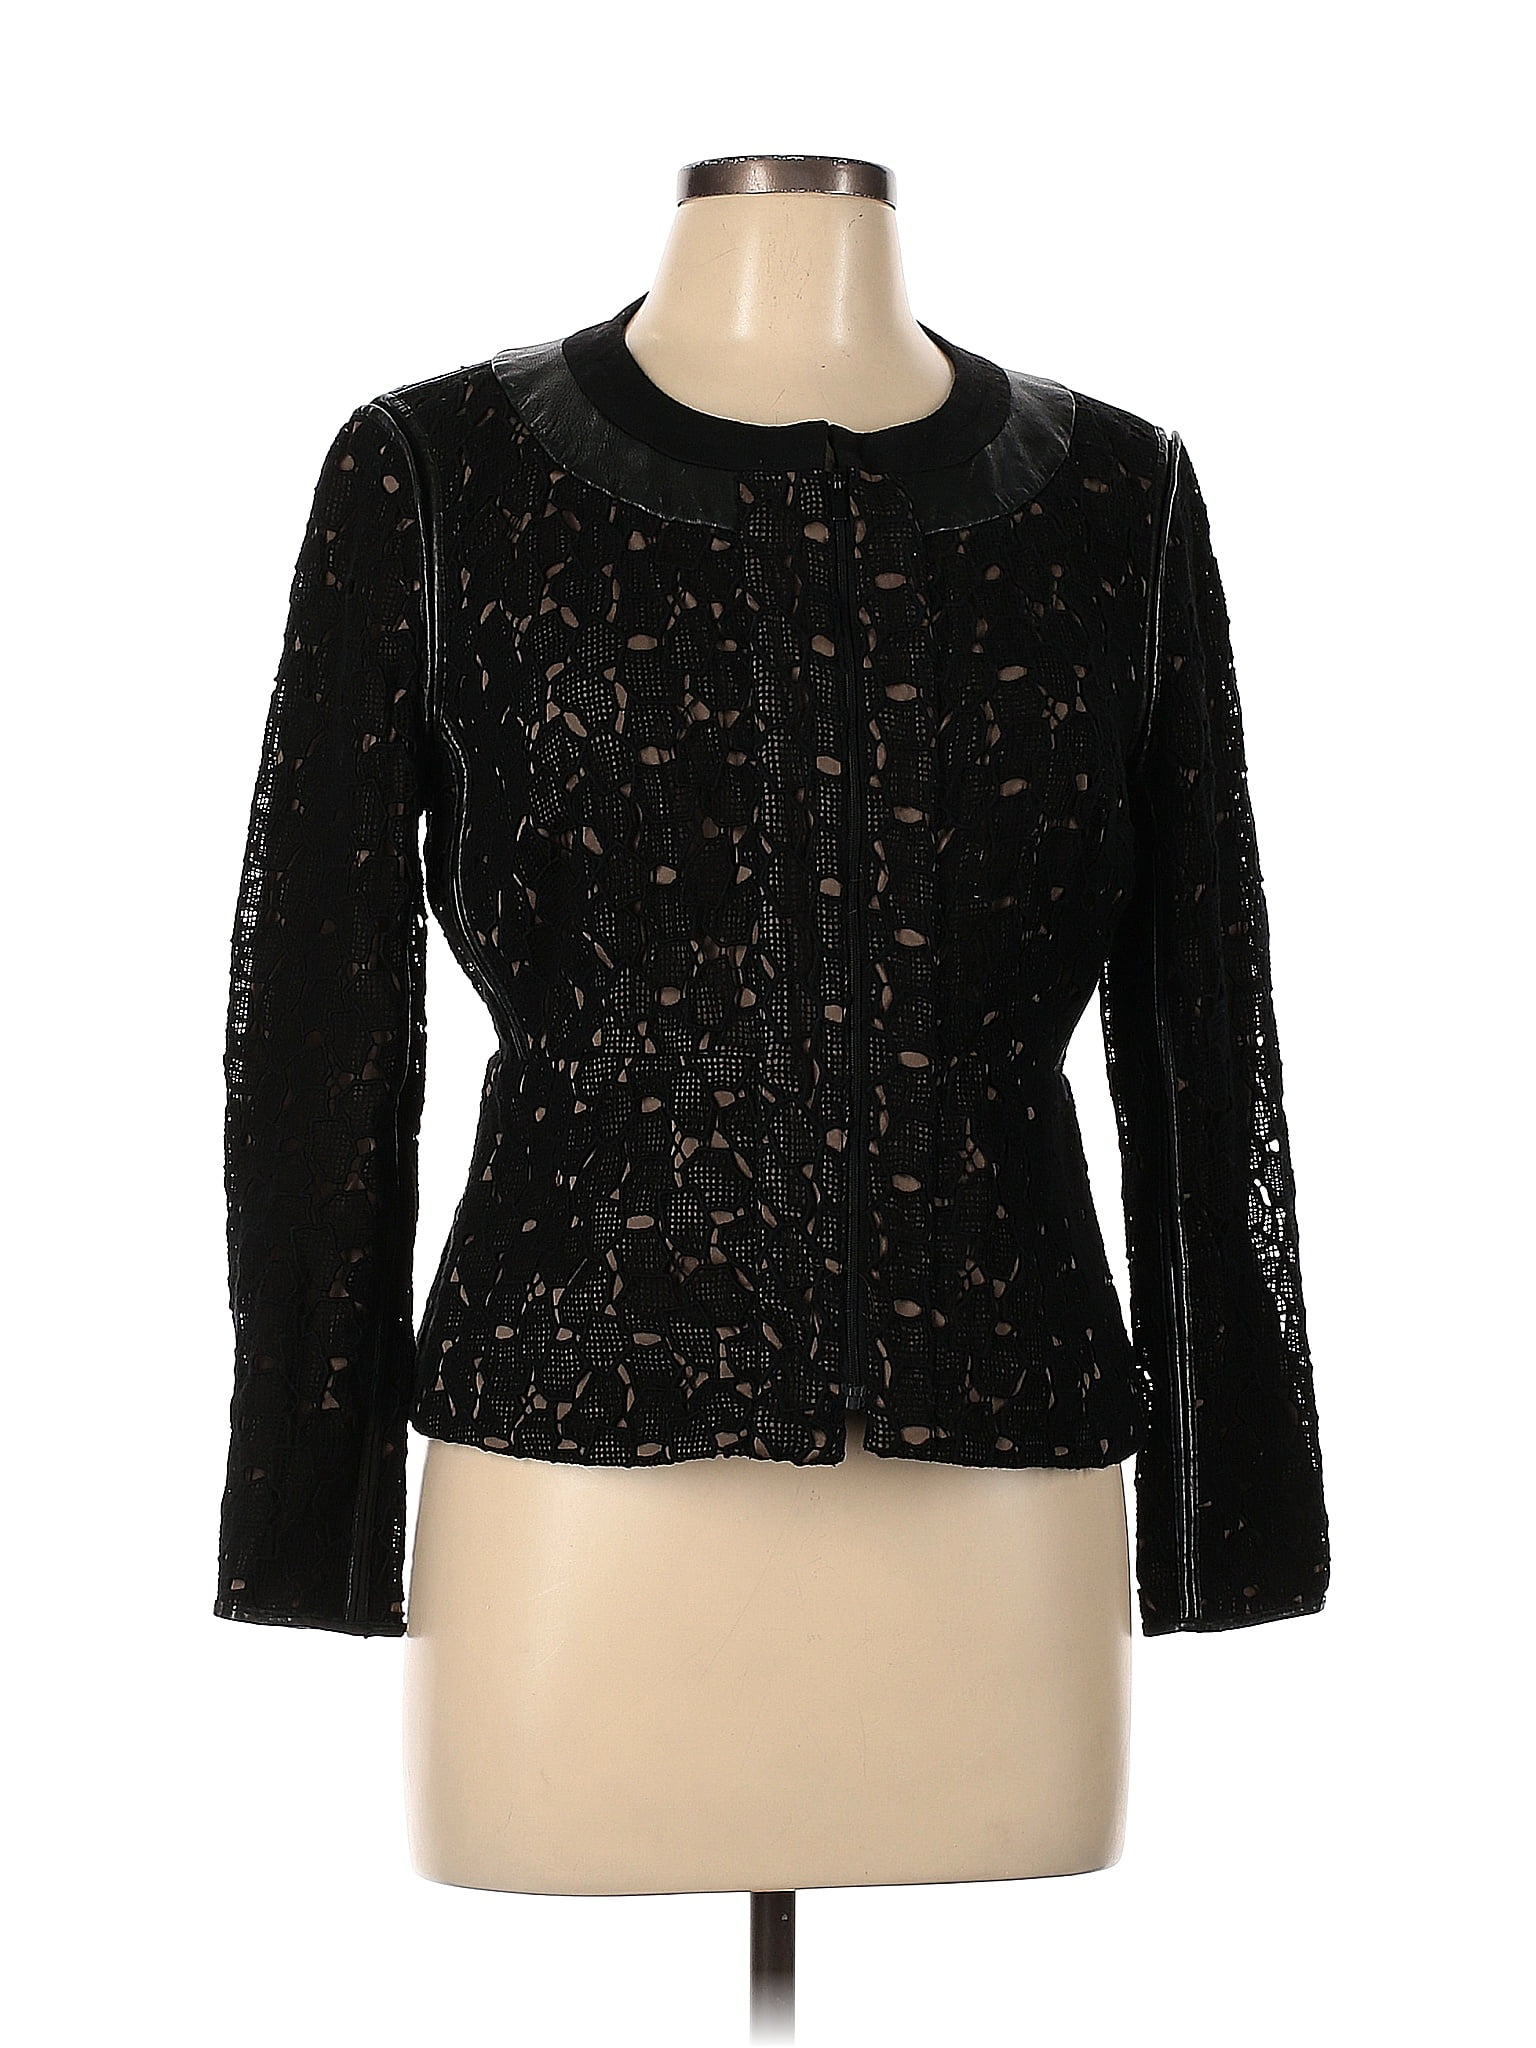 Diane von Furstenberg Black Jacket Size 10 - 81% off | thredUP